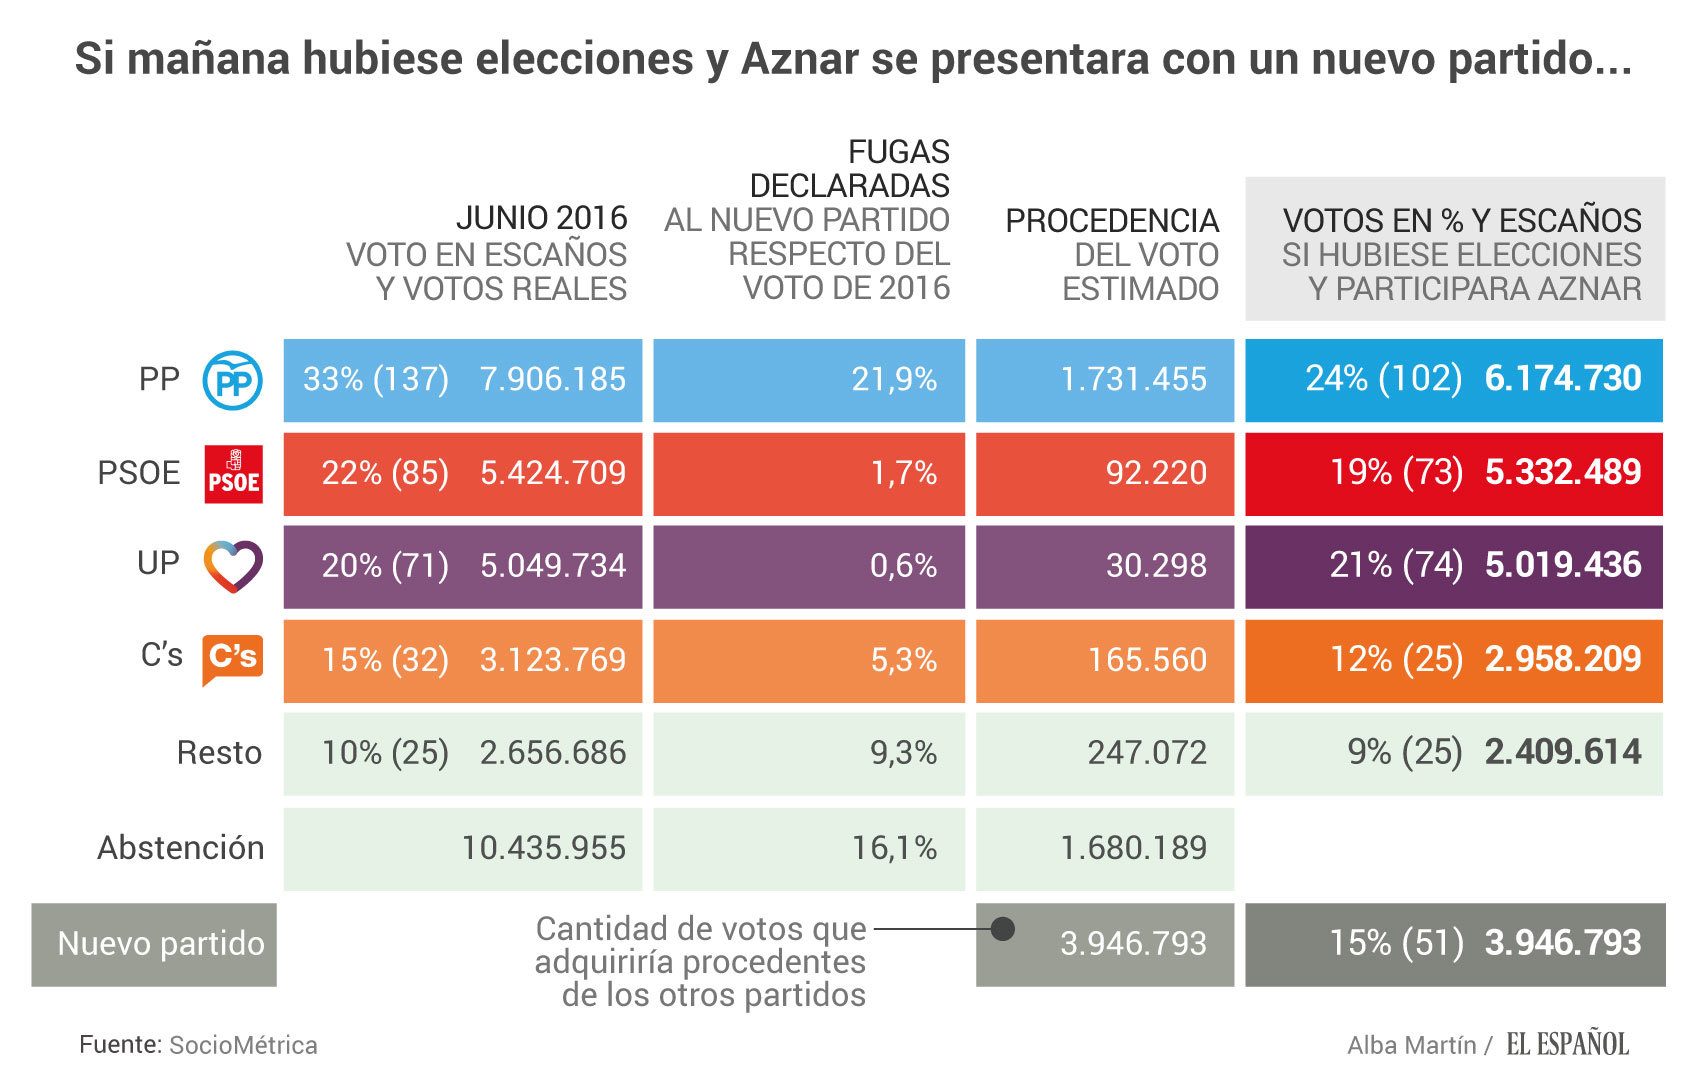 Un nuevo partido de Aznar lograría 4 millones de votos y 51 escaños